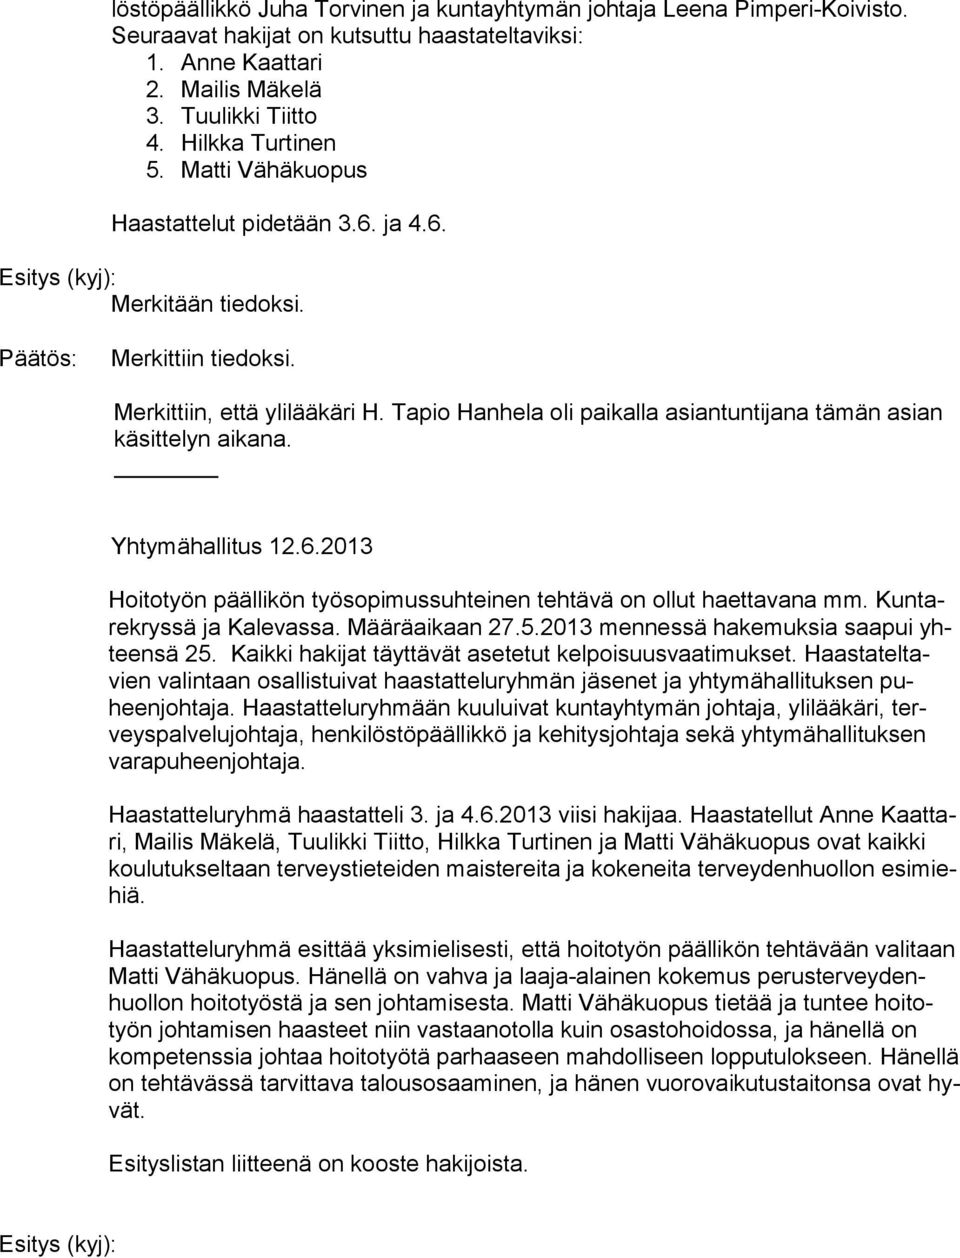 Tapio Hanhela oli paikalla asiantuntijana tämän asian kä sit te lyn aikana. Yhtymähallitus 12.6.2013 Hoitotyön päällikön työsopimussuhteinen tehtävä on ollut haettavana mm.